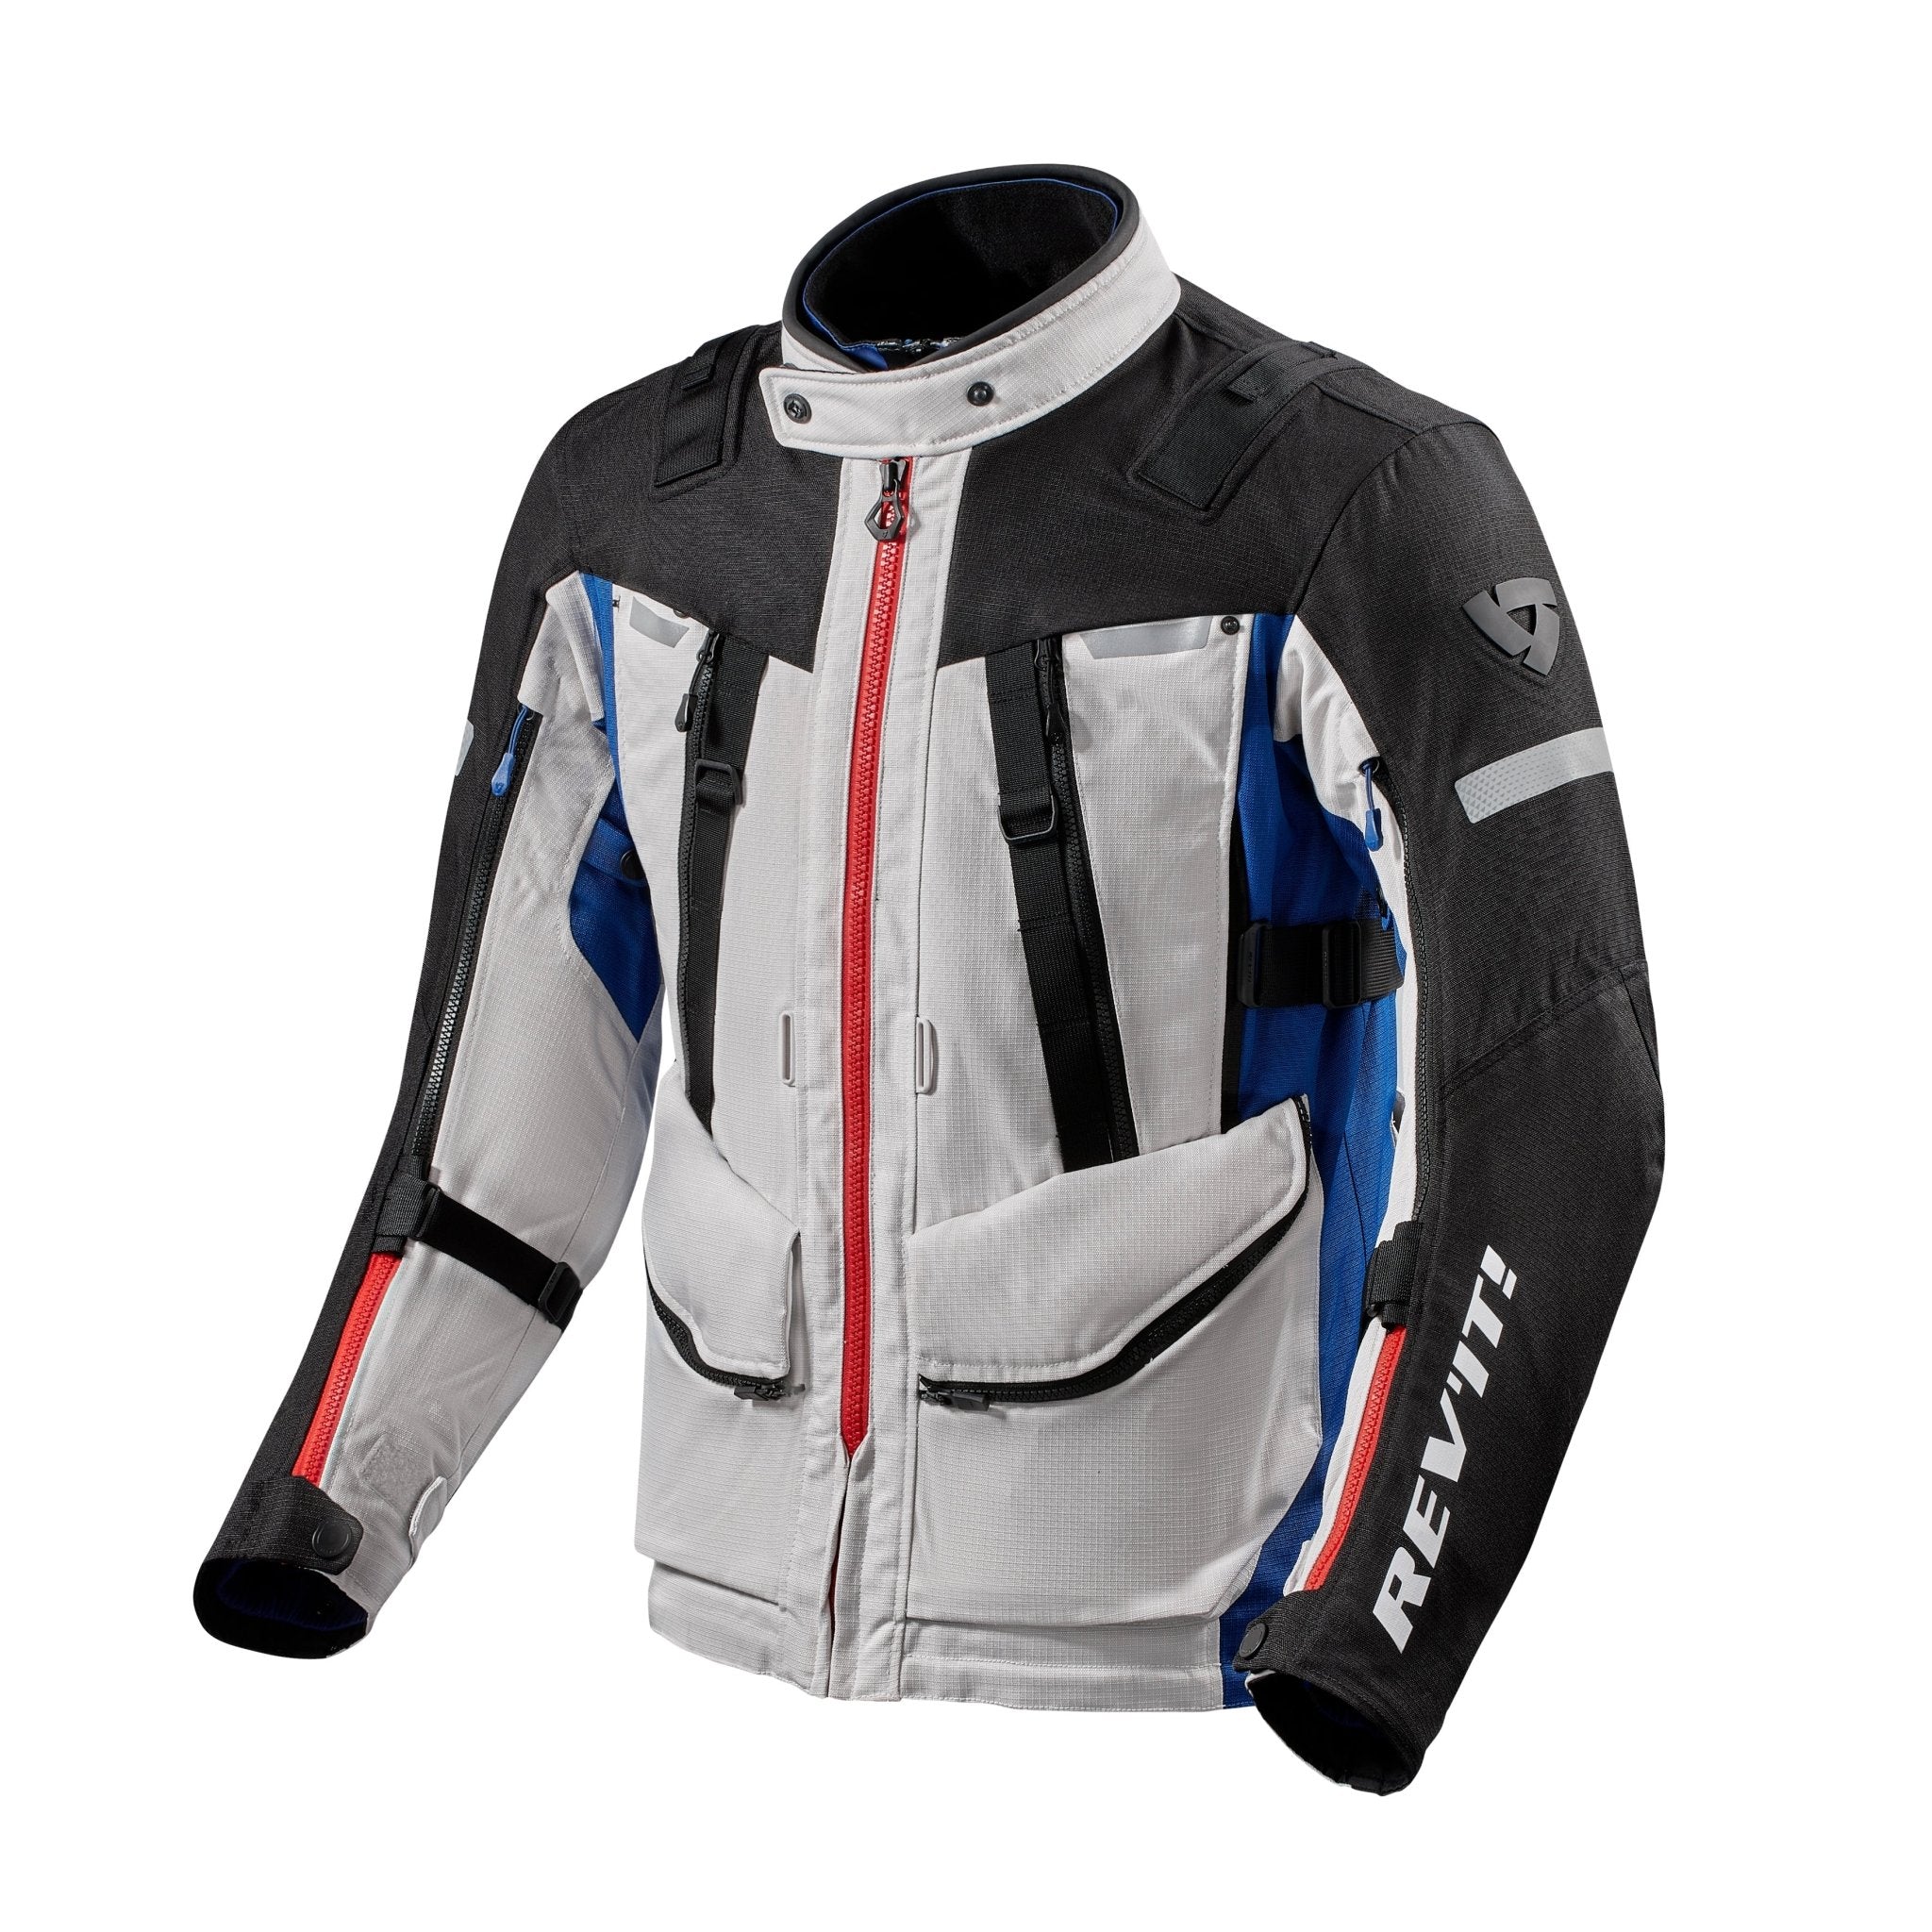 REV'IT! | Sand 4 H20 Men's Jacket - Silver/Blue - Men's Textile Jackets - Peak Moto